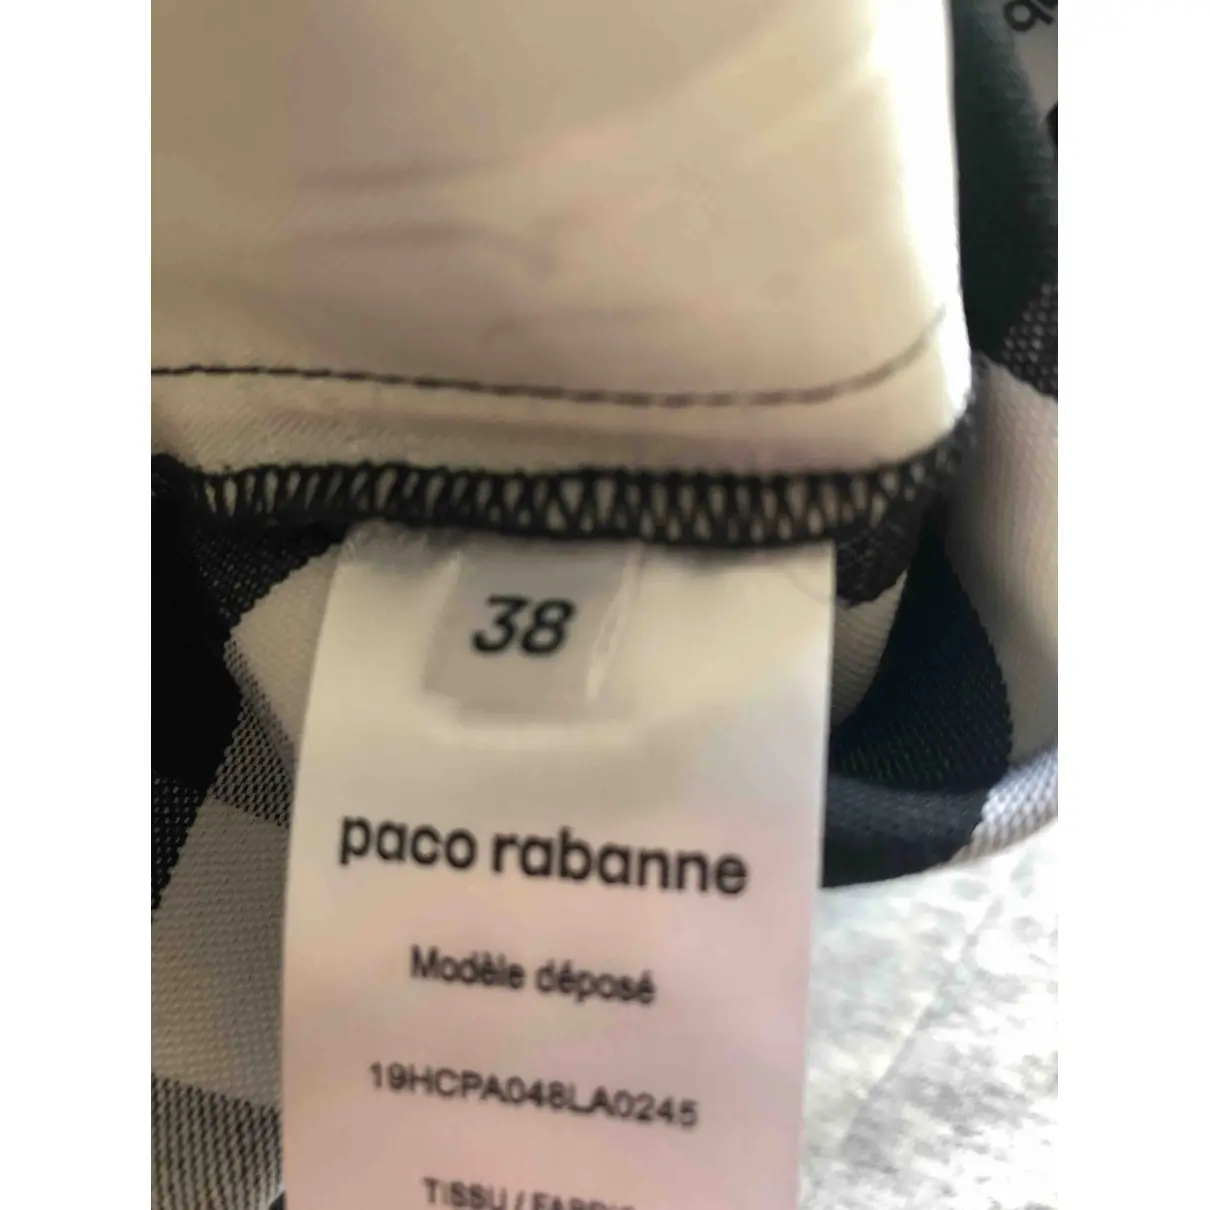 Buy Paco Rabanne Wool straight pants online